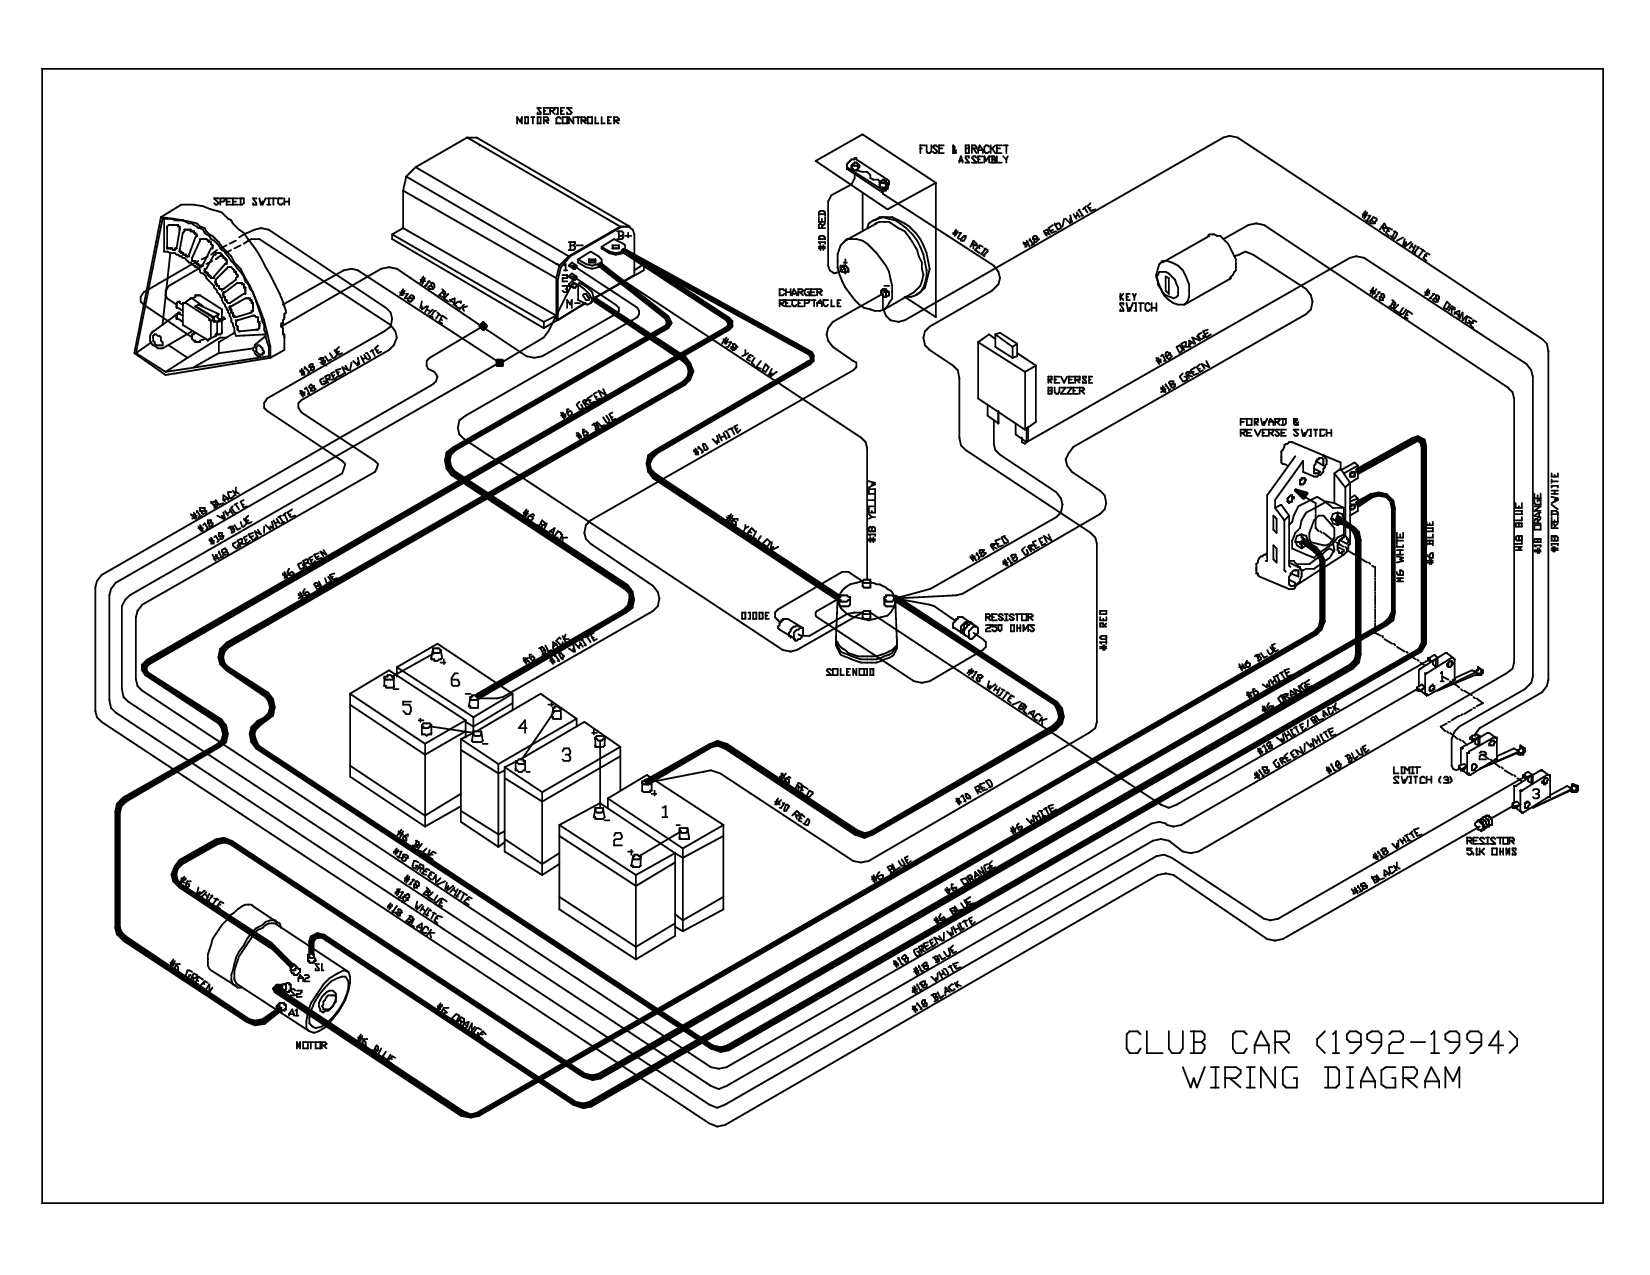 club car 16v wiring diagram wiring diagram operations 94 club car wiring diagram wiring diagram club